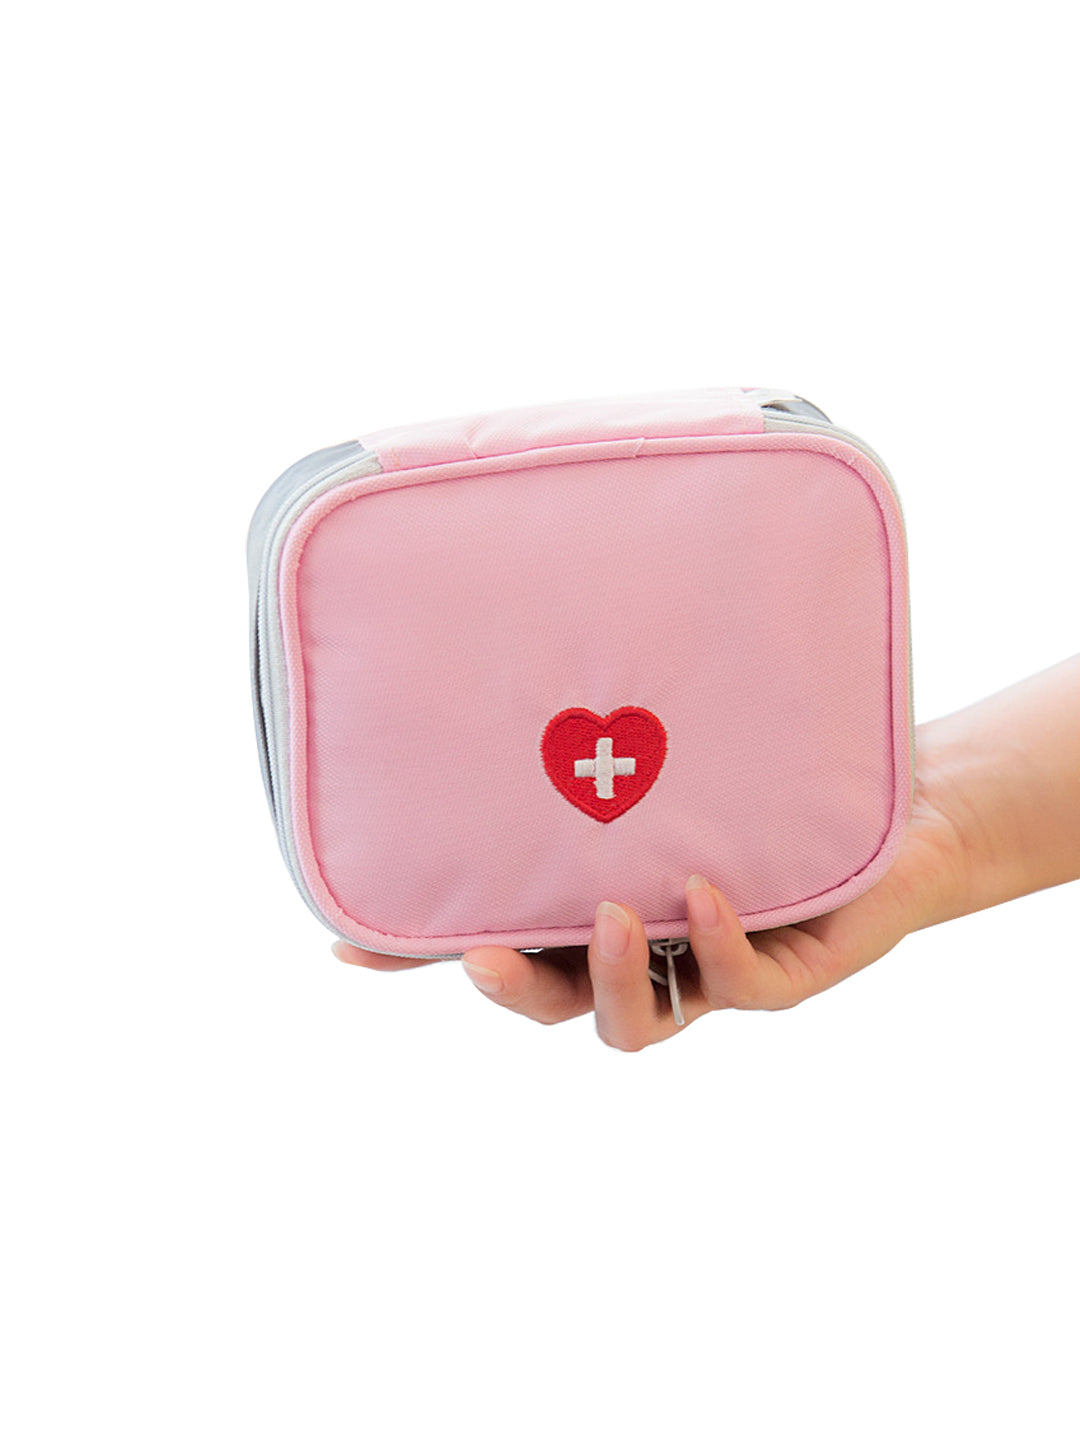 VON CASA Empty First Aid Box - Pink